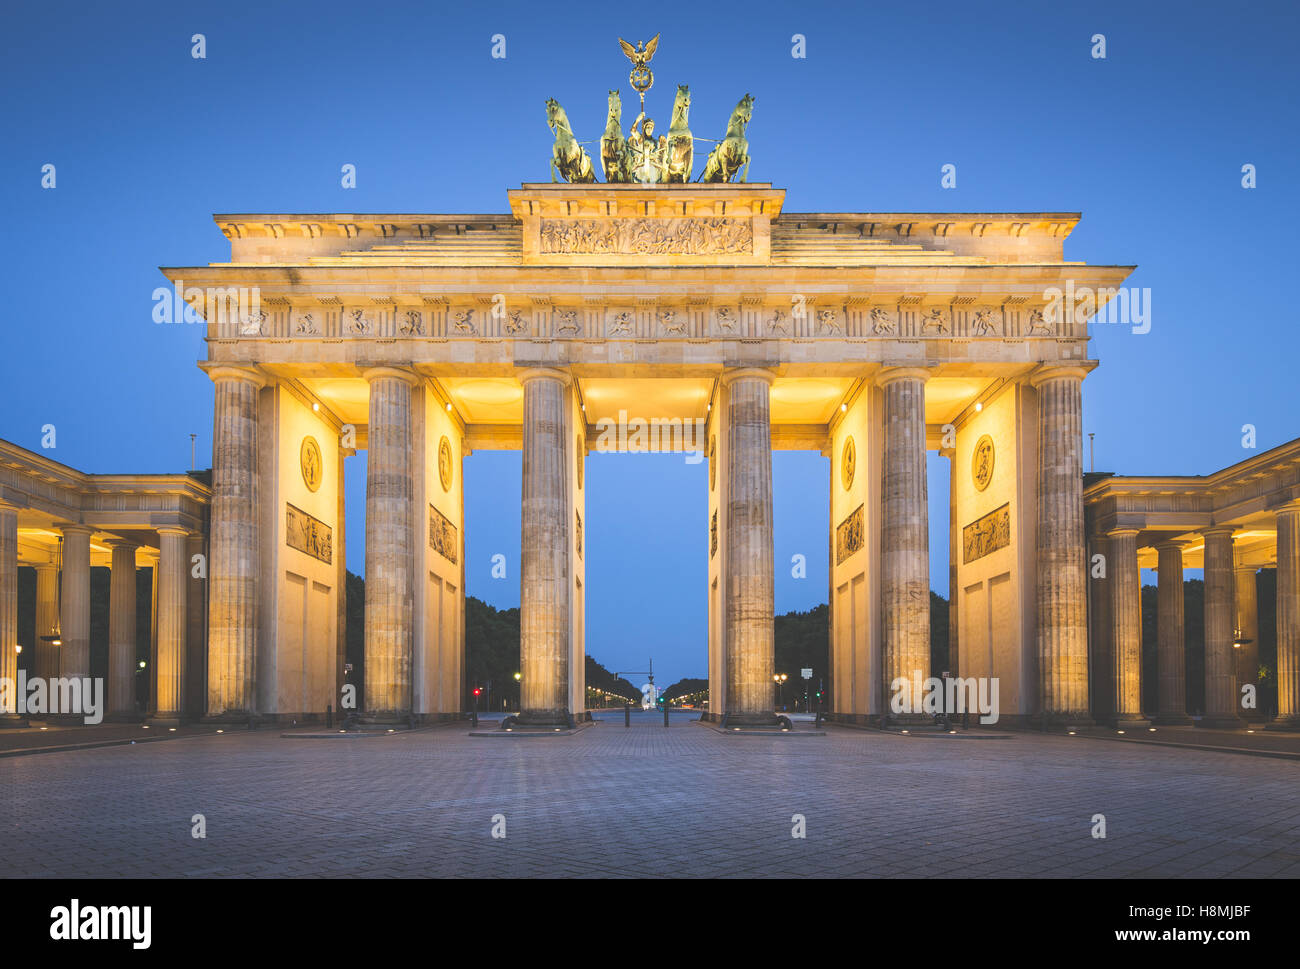 Visualizzazione classica della famosa Porta di Brandeburgo nel crepuscolo con retro vintage effetti filtro, Berlino, Germania Foto Stock